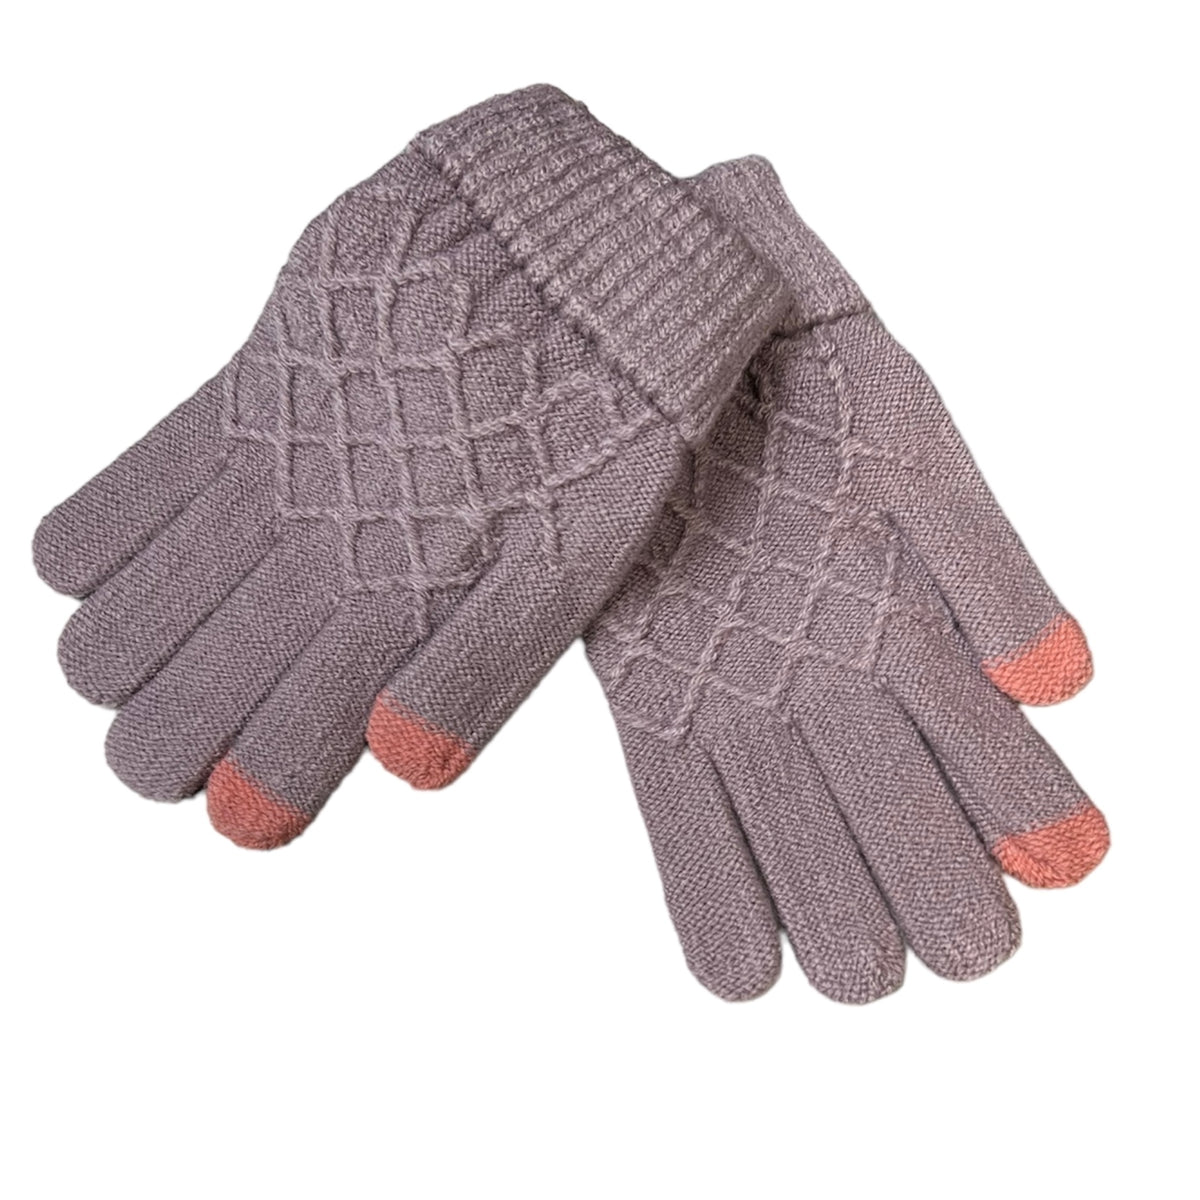 Les gants laine C'est Elle sont conçus avec soin et modélés avec la plus haute qualité de  tissus laine, offrant douceur et chaleur pour les mains. Ils sont faits d'un tissu lisse et luxueux qui procurent sophistication et élégance. Ces gants sont le complément parfait pour une tenue chic et raffinée.